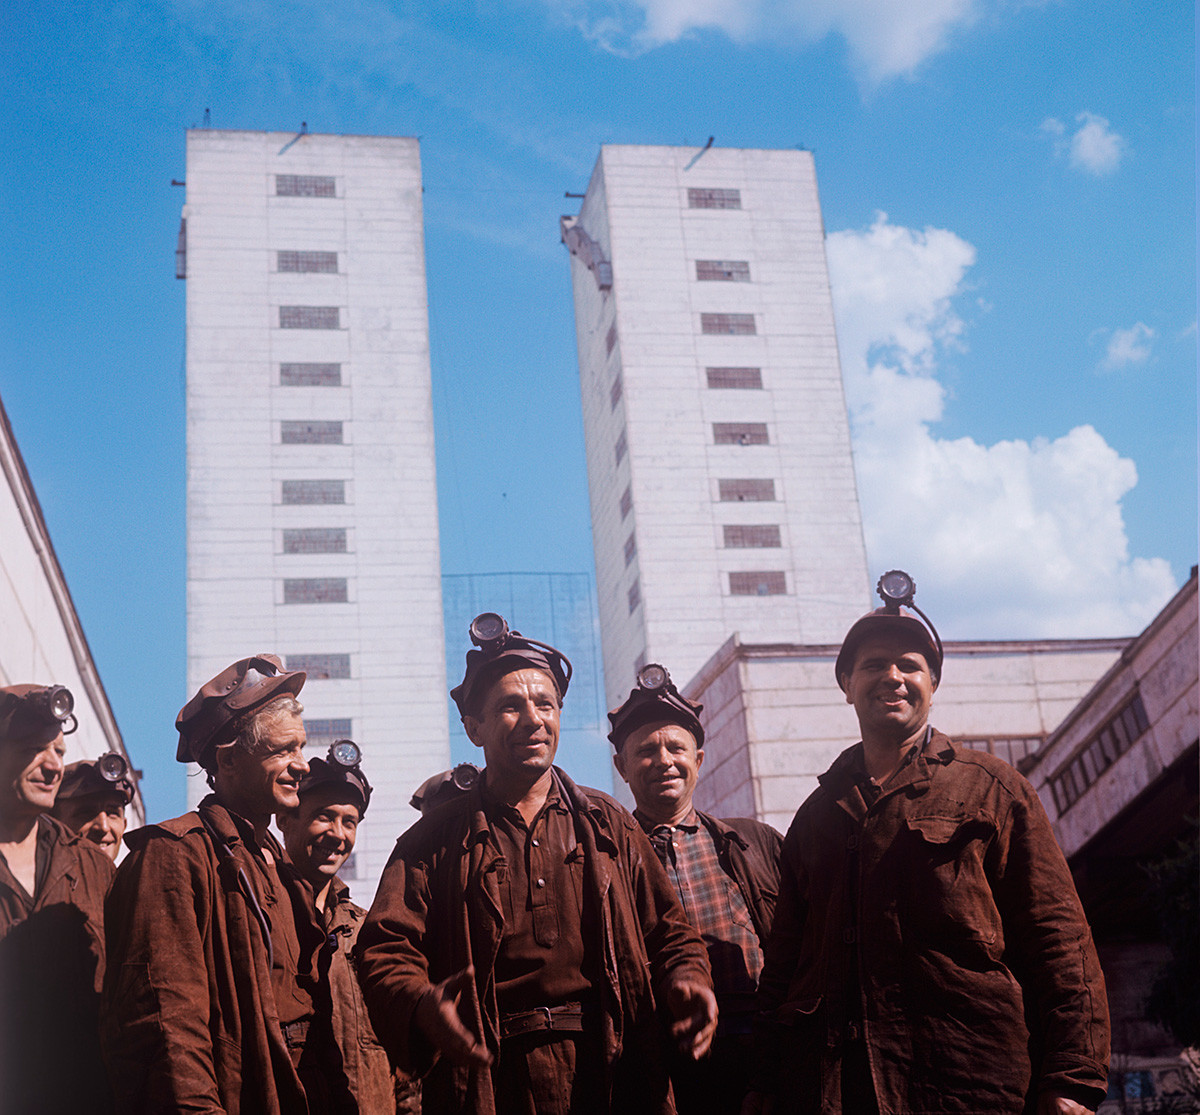 Mineros en la mina Gvardeiskaia, Krivoi Rog, 1970. 